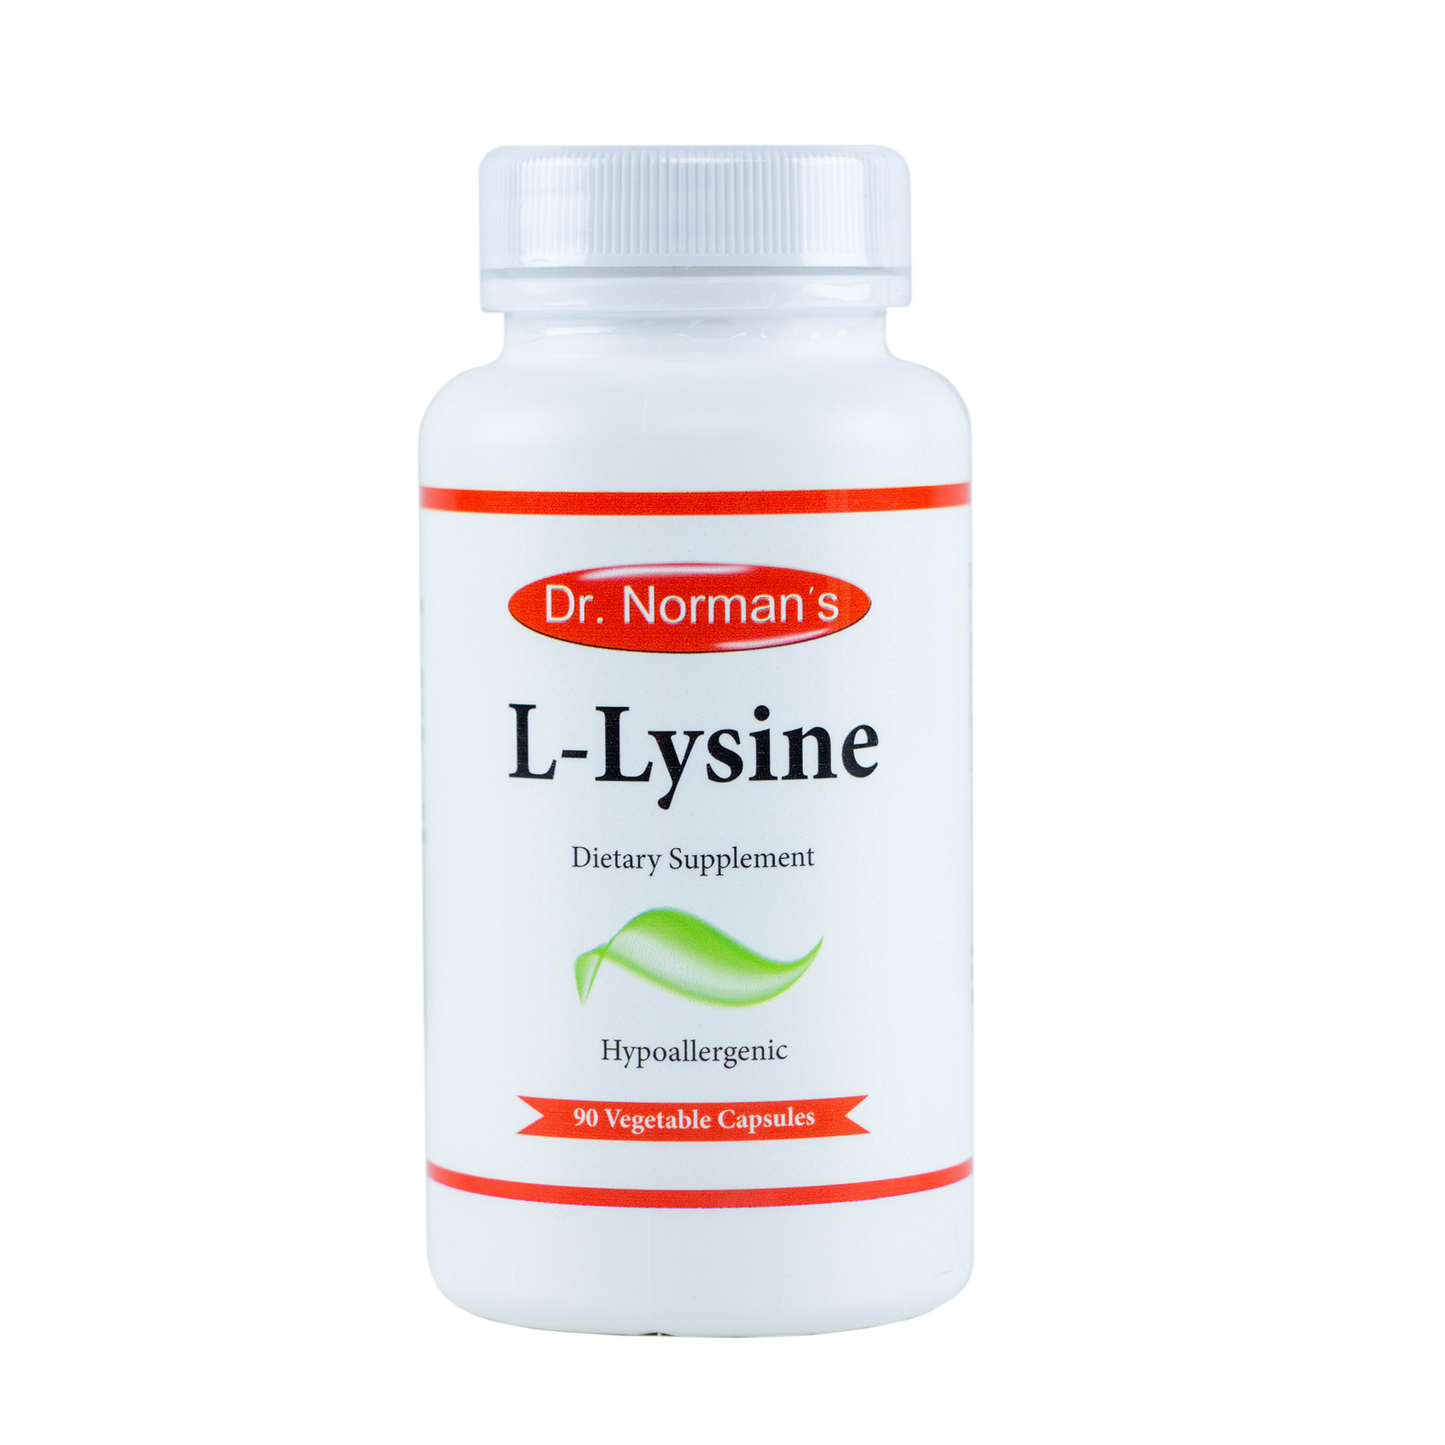 Dr. Norman's L- Lysine